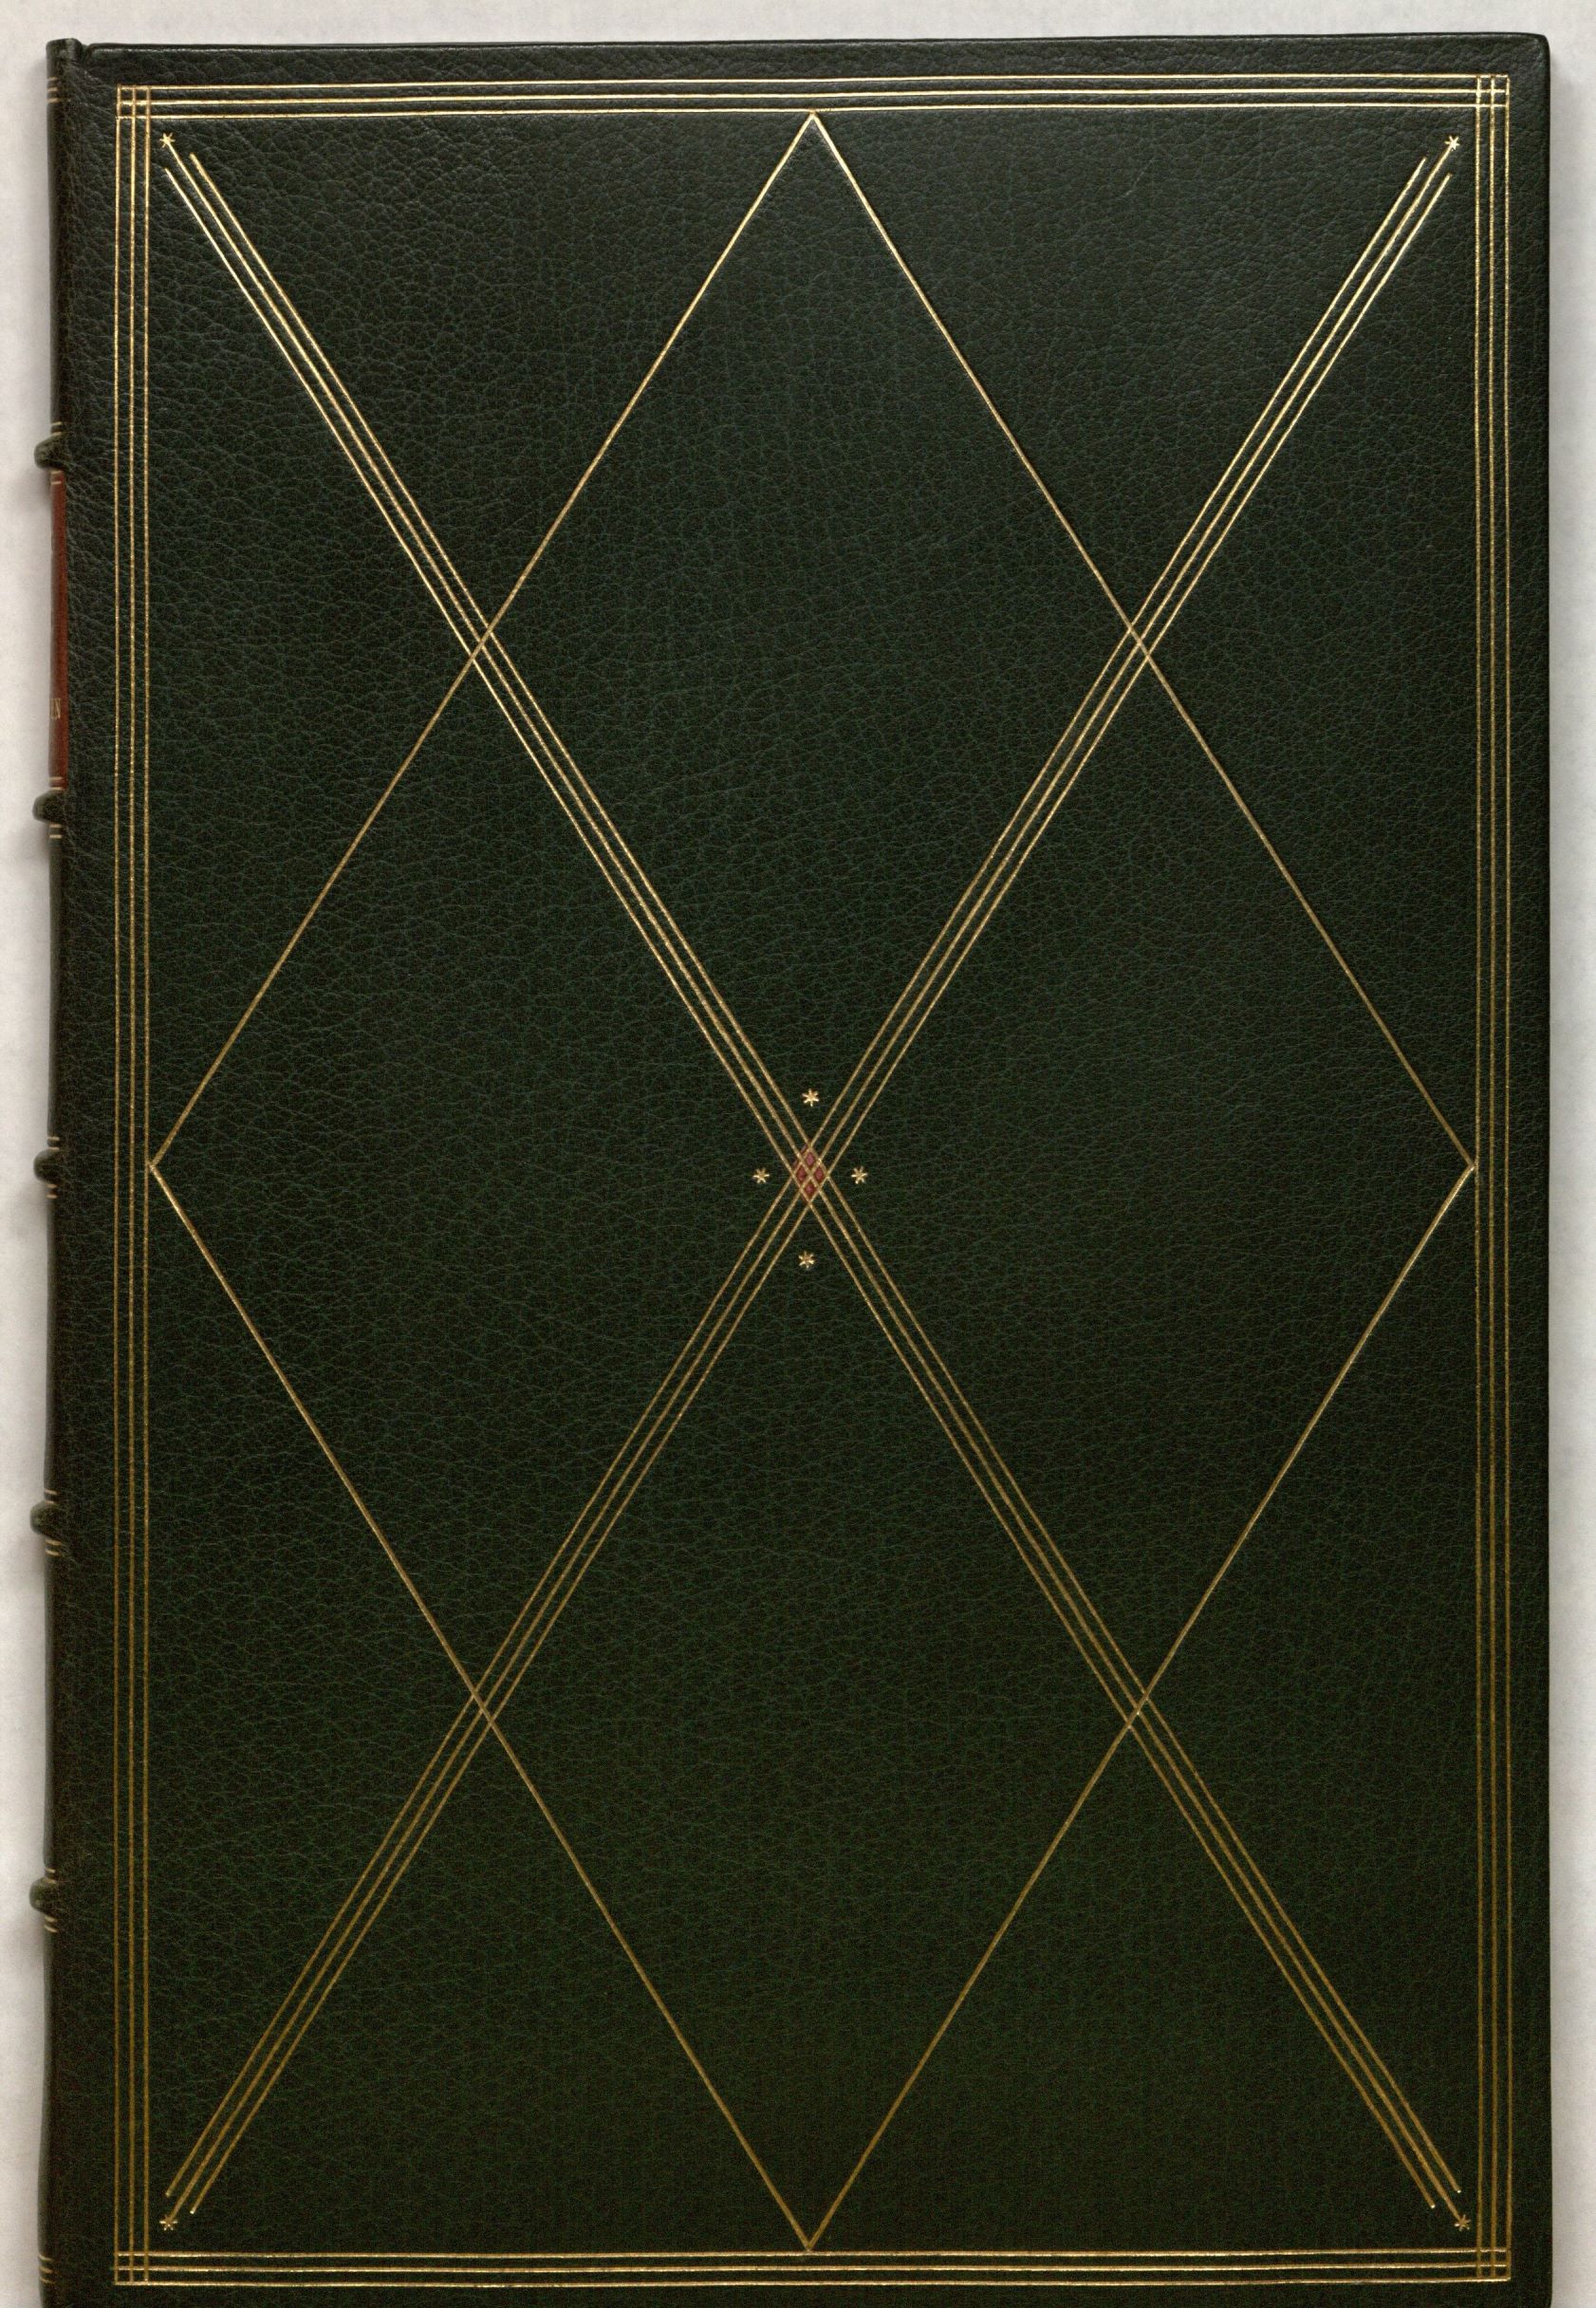 Rainer Maria Rilke’s Duineser Elegien, Leipzig: im Insel-Verlag, 1923: cover. Special Collections, call number: Rilke Z50.